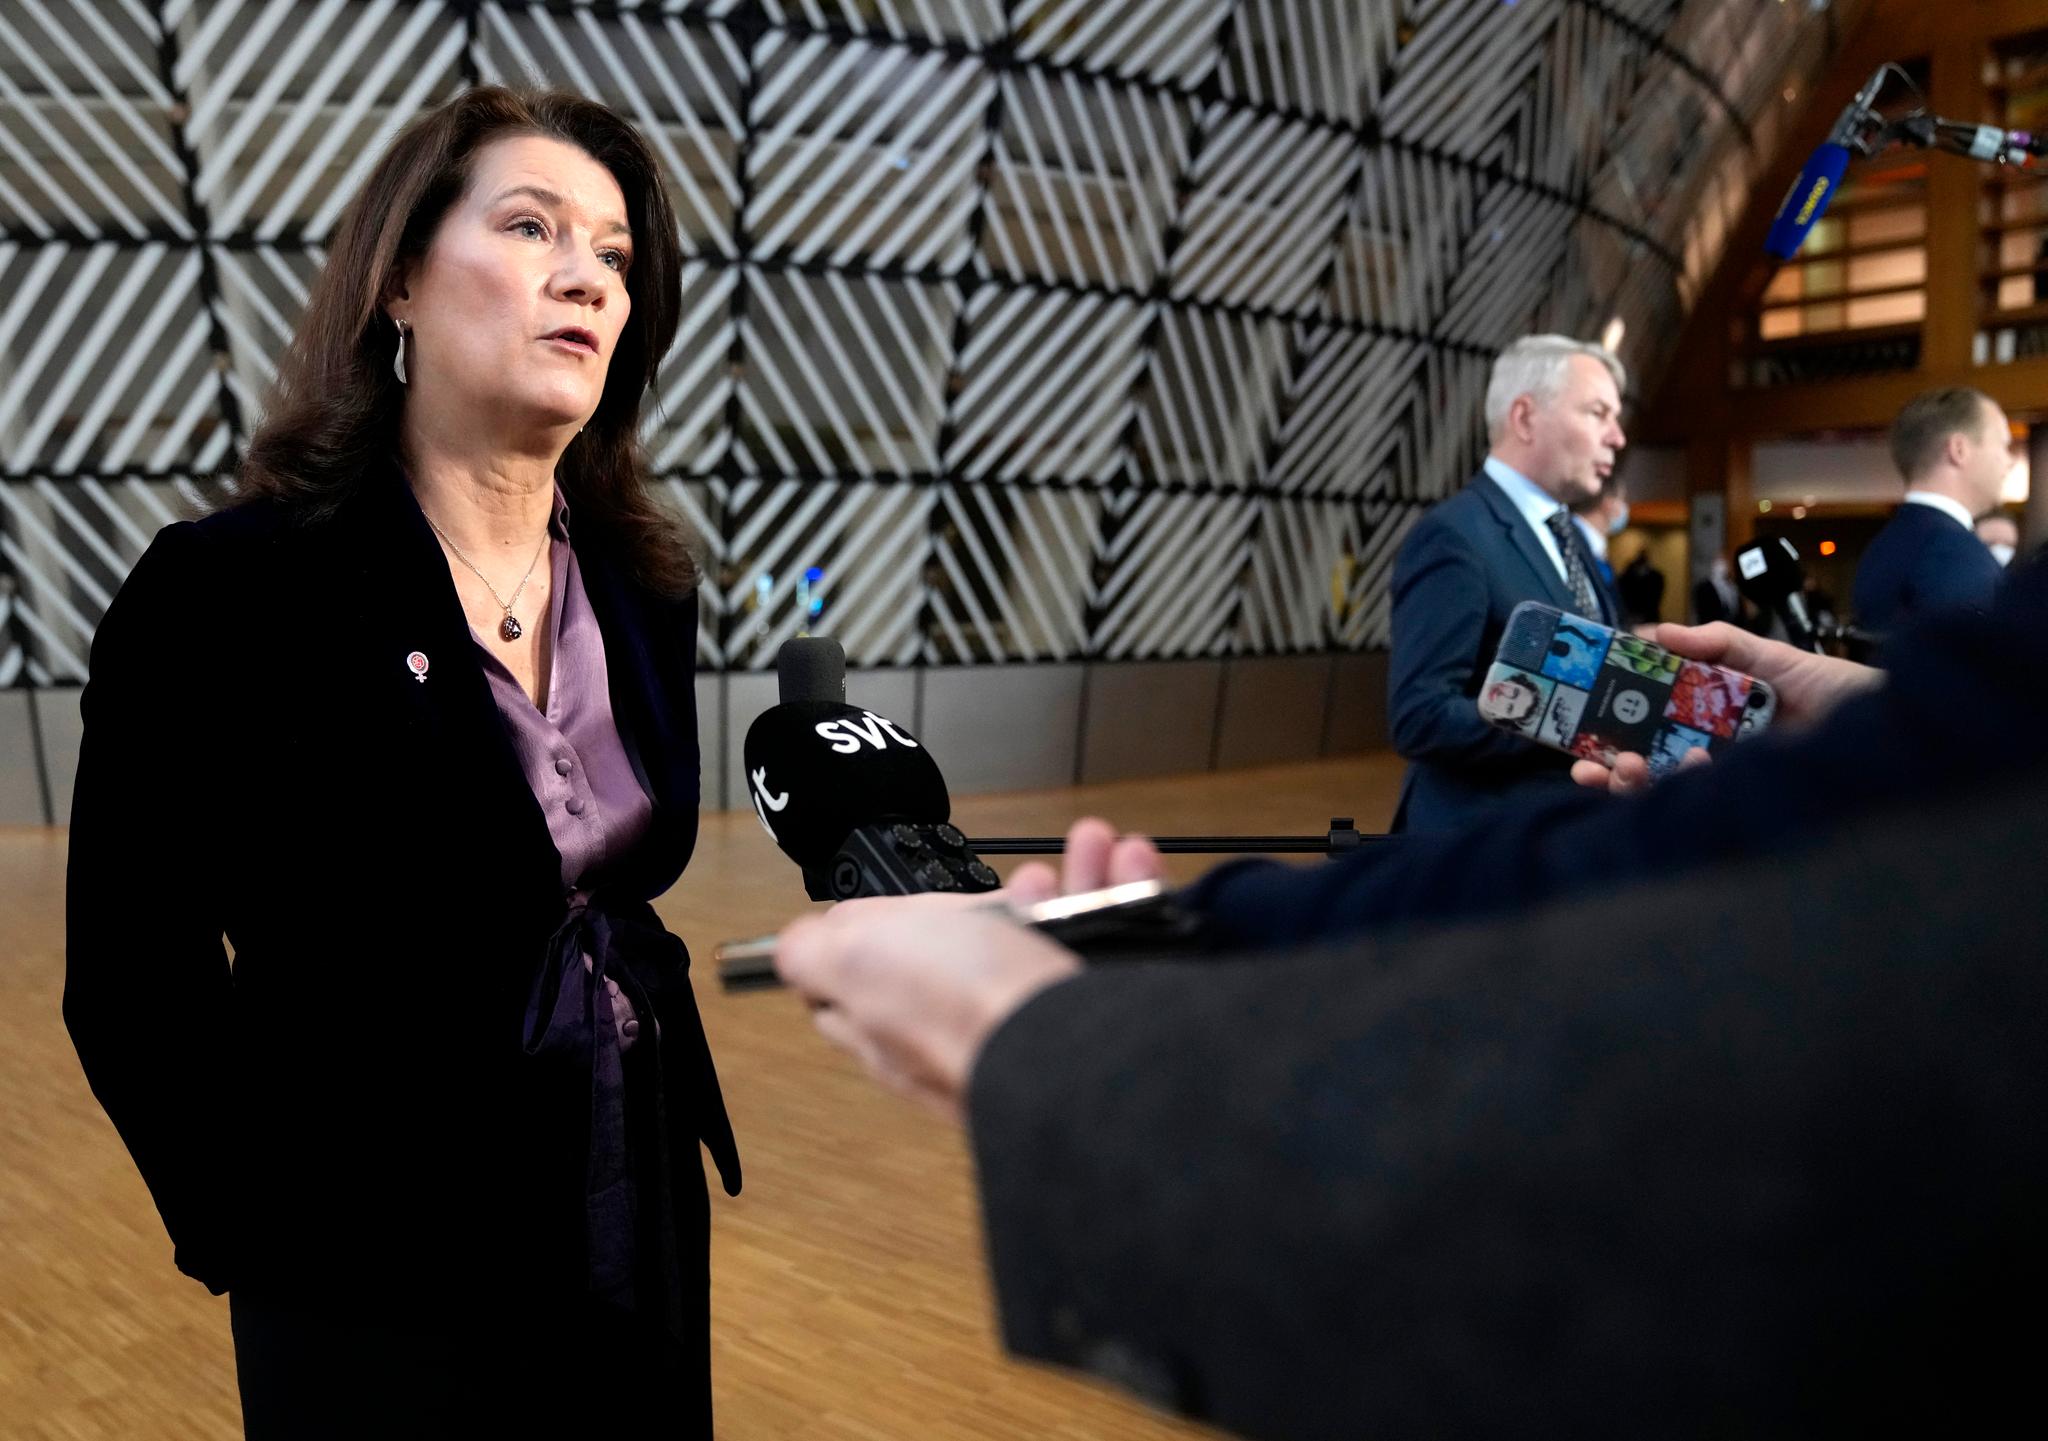 Sveriges utenriksminister Anna Linde er av tyrkiske myndigheter anklaget for å ha opptrådt «provoserende». 